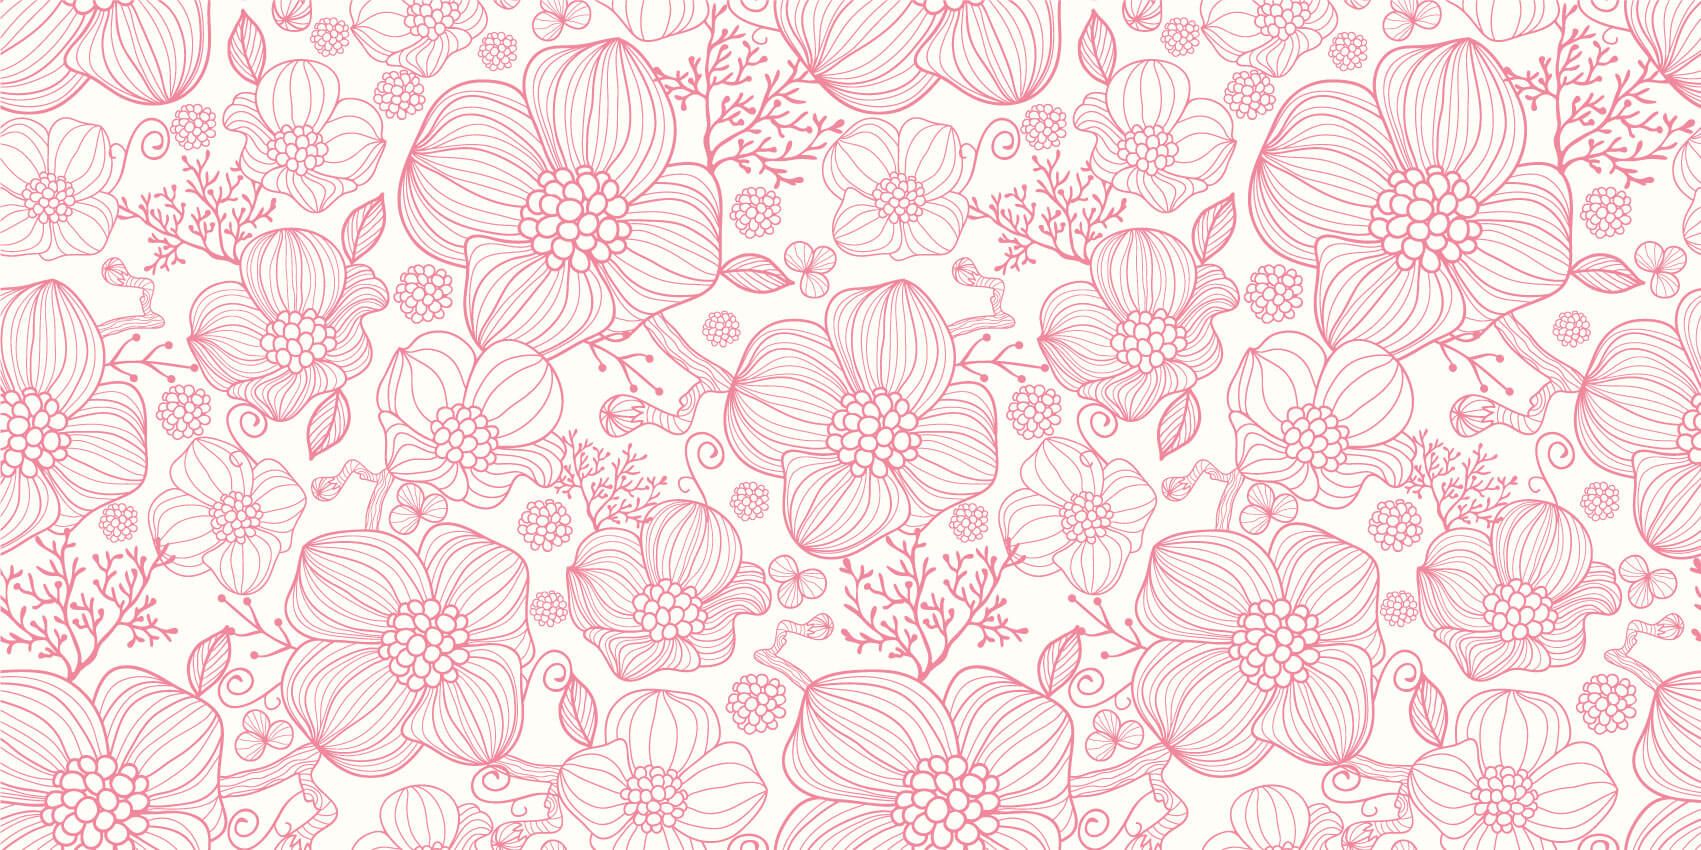 Patterns for Kidsroom - Large pink flowers - Bedroom